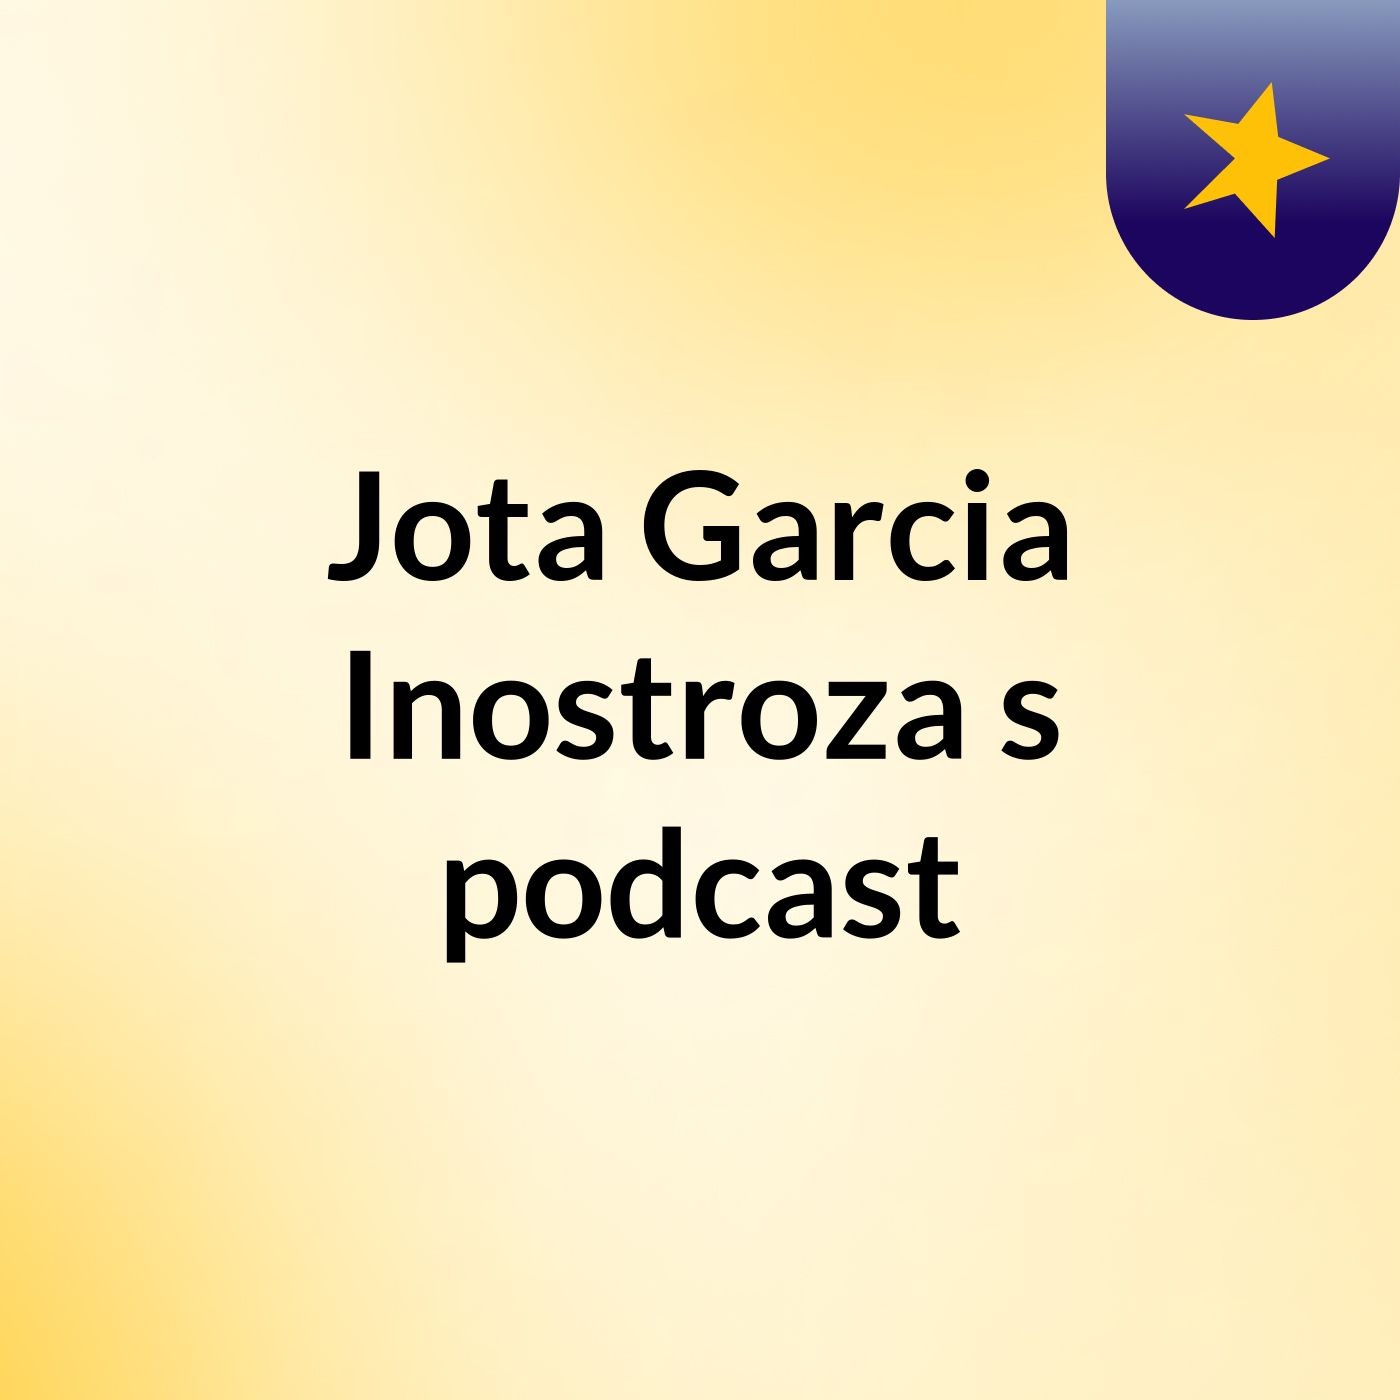 Jota Garcia Inostroza's podcast